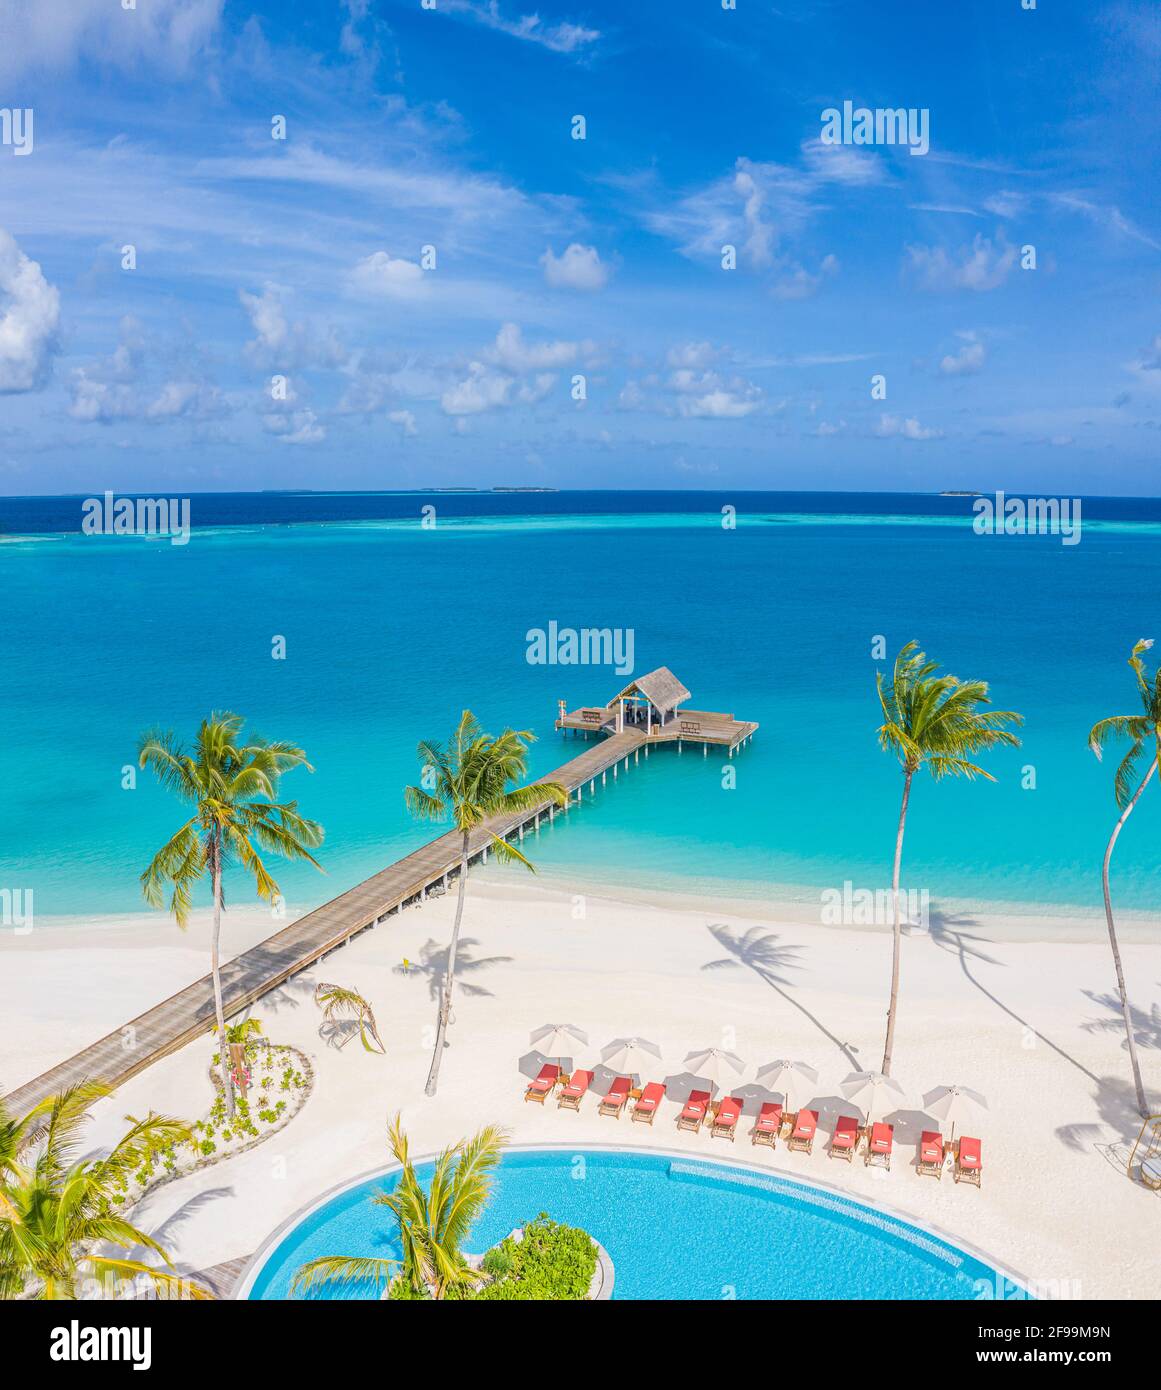 Luxuriöse Bucht und Strand von oben aus der Luft, toller Strand, Swimmingpool am tropischen Inselstrand. Palmen im Sonnenlicht, wunderschönes blaues Meer Stockfoto